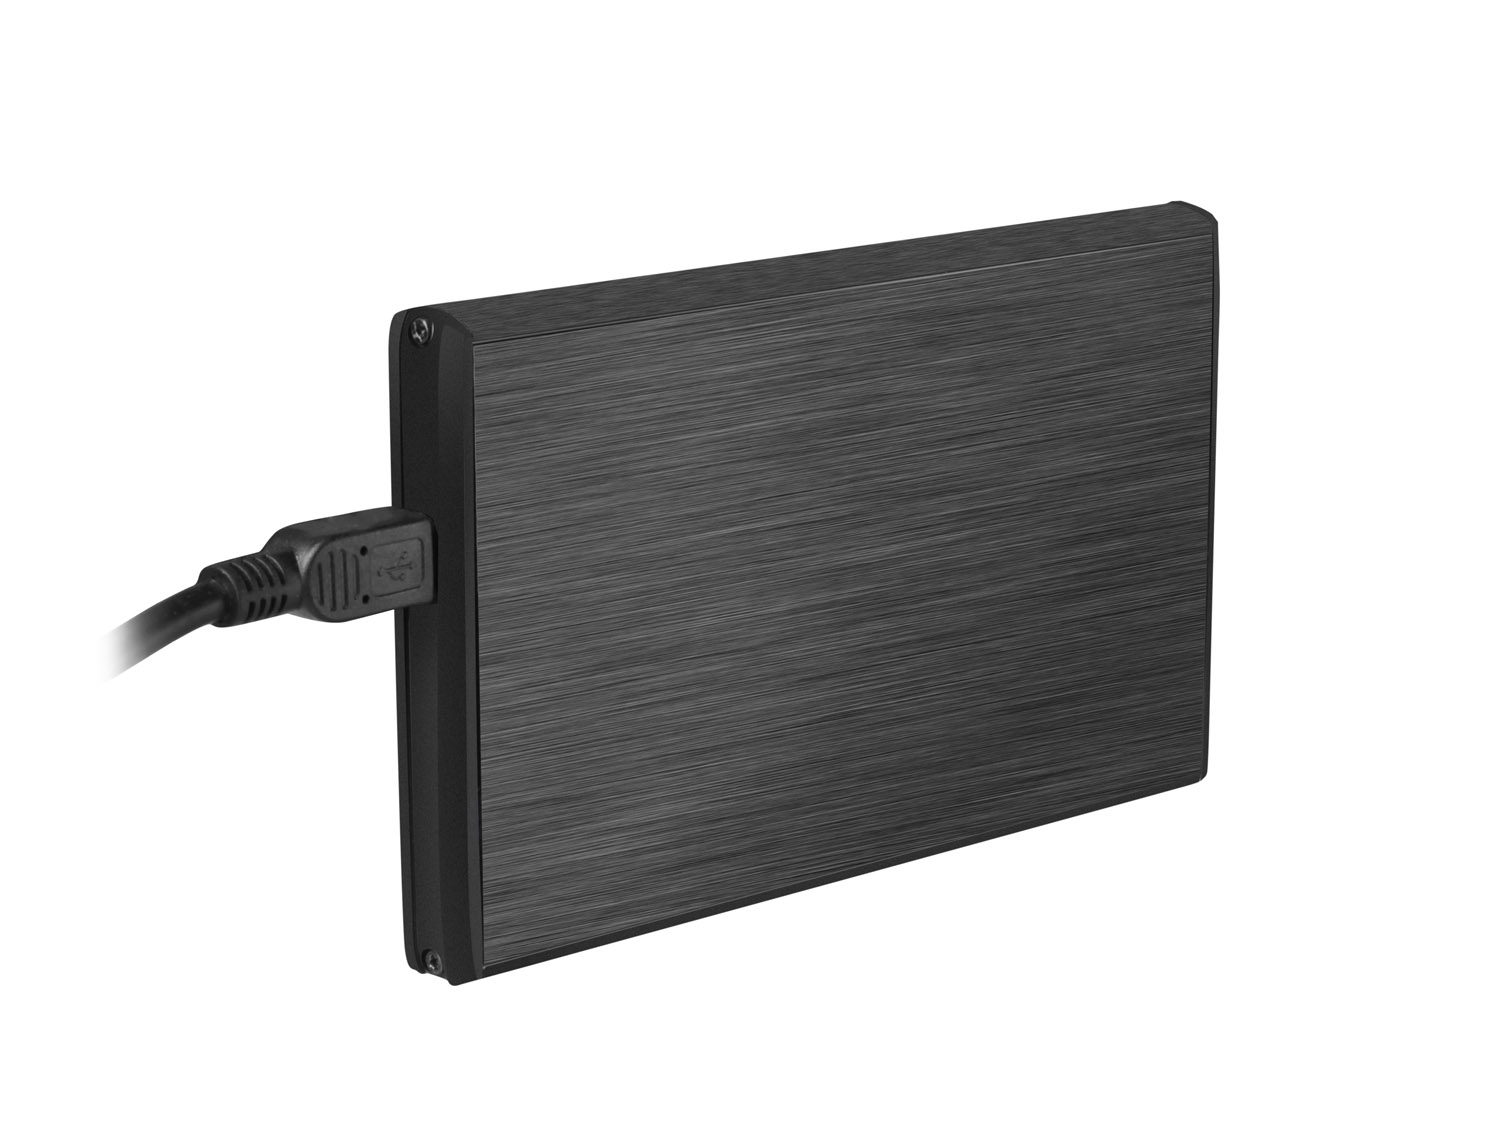 Externí box pro HDD 2, 5" USB 2.0 Natec Rhino, černý 